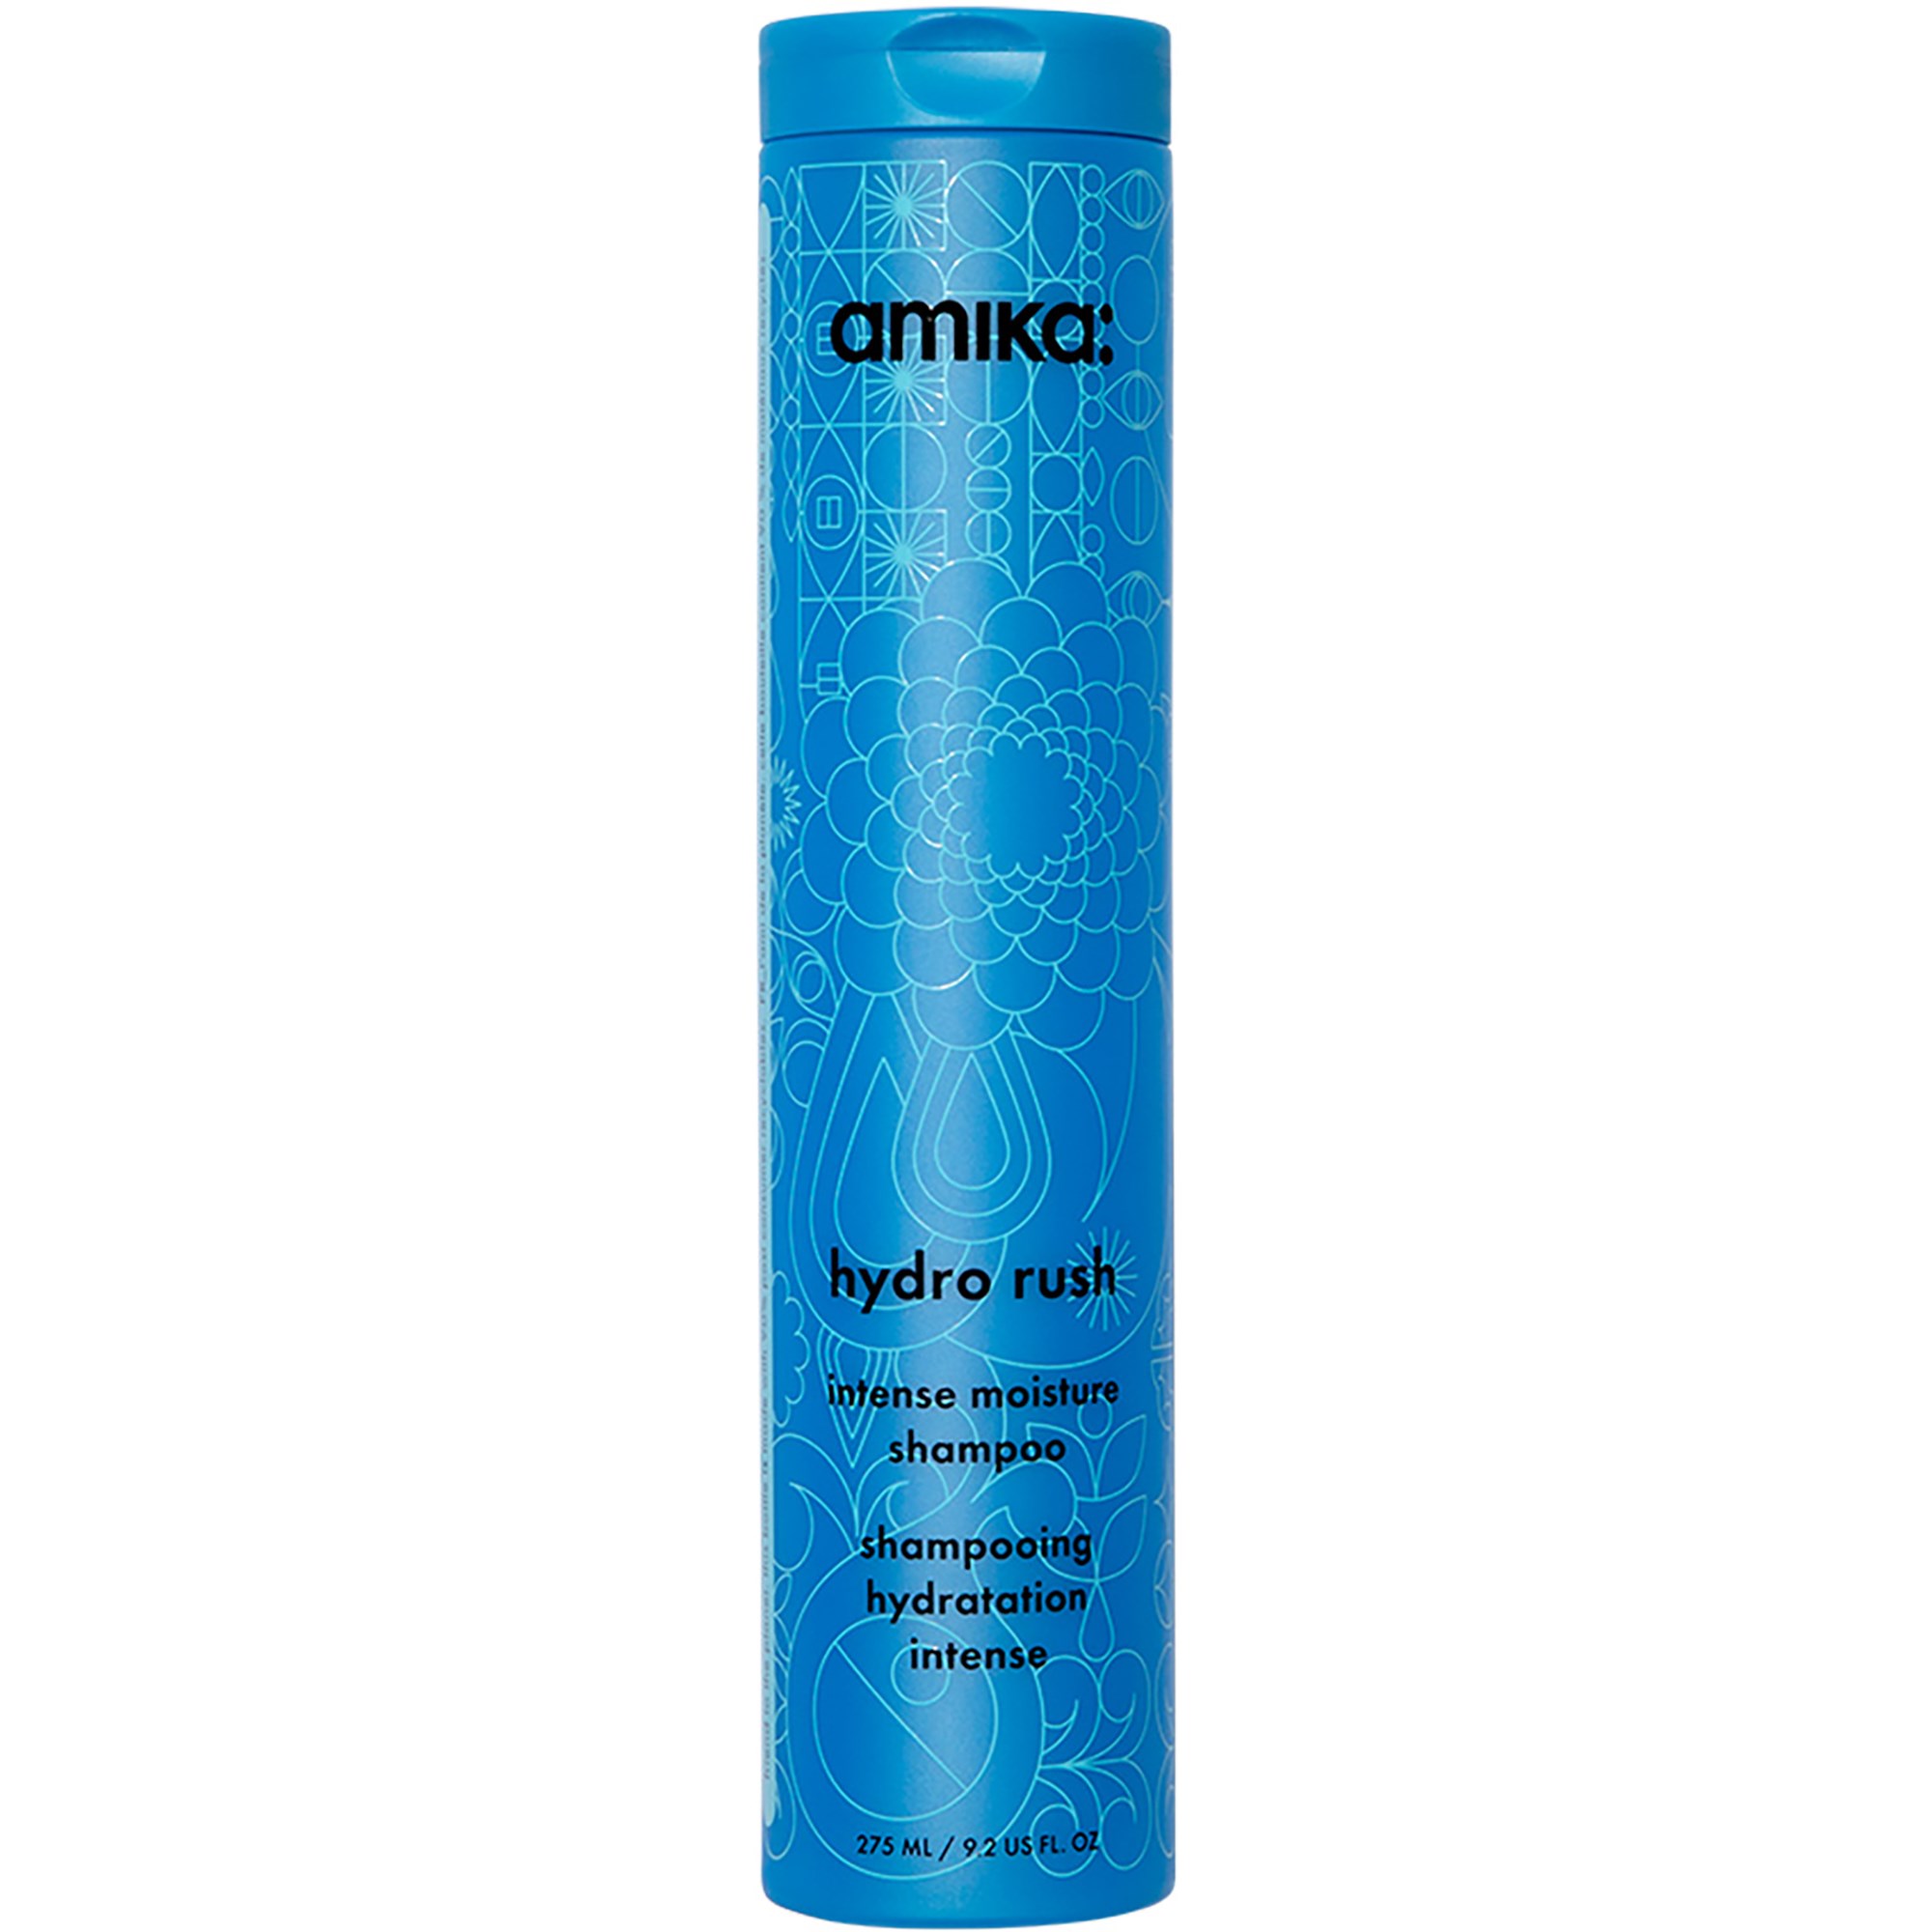 Amika Hydro Rush Intense Moisture Shampoo, 275 ml